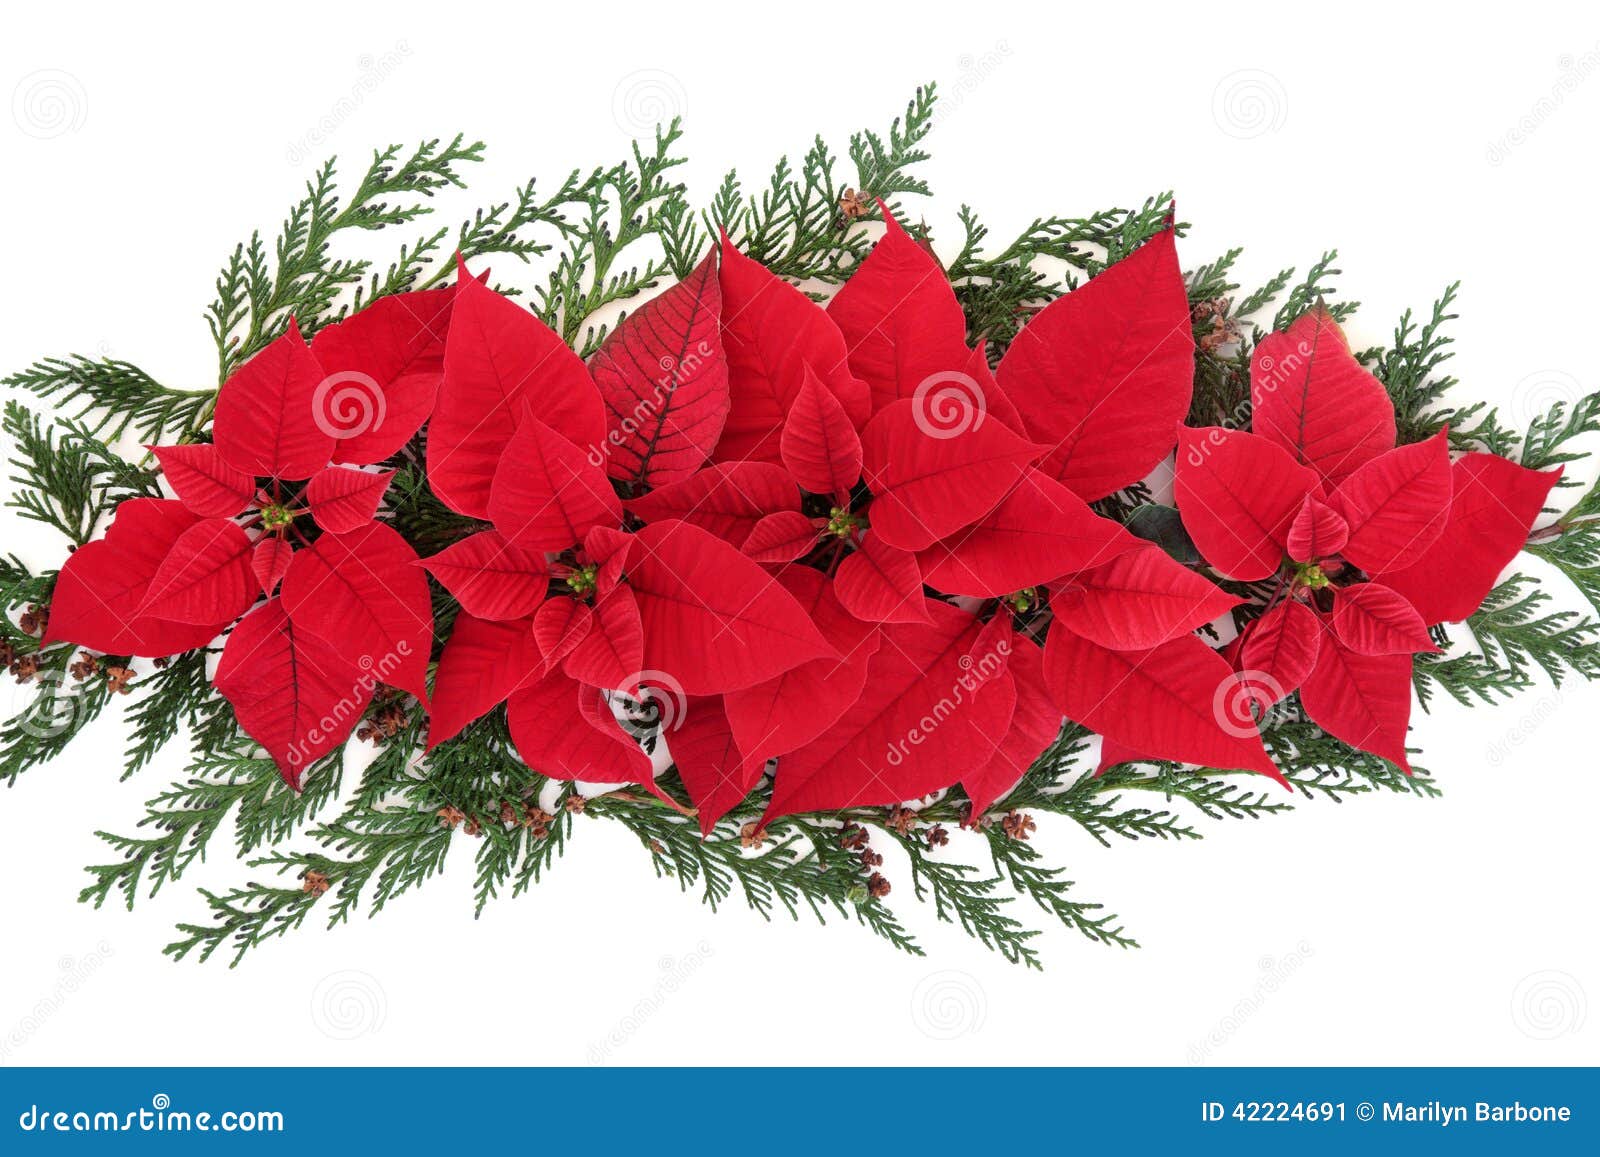 Stella Di Natale Esposizione.Esposizione Del Fiore Della Stella Di Natale Immagine Stock Immagine Di Poinsettia Cipresso 42224691